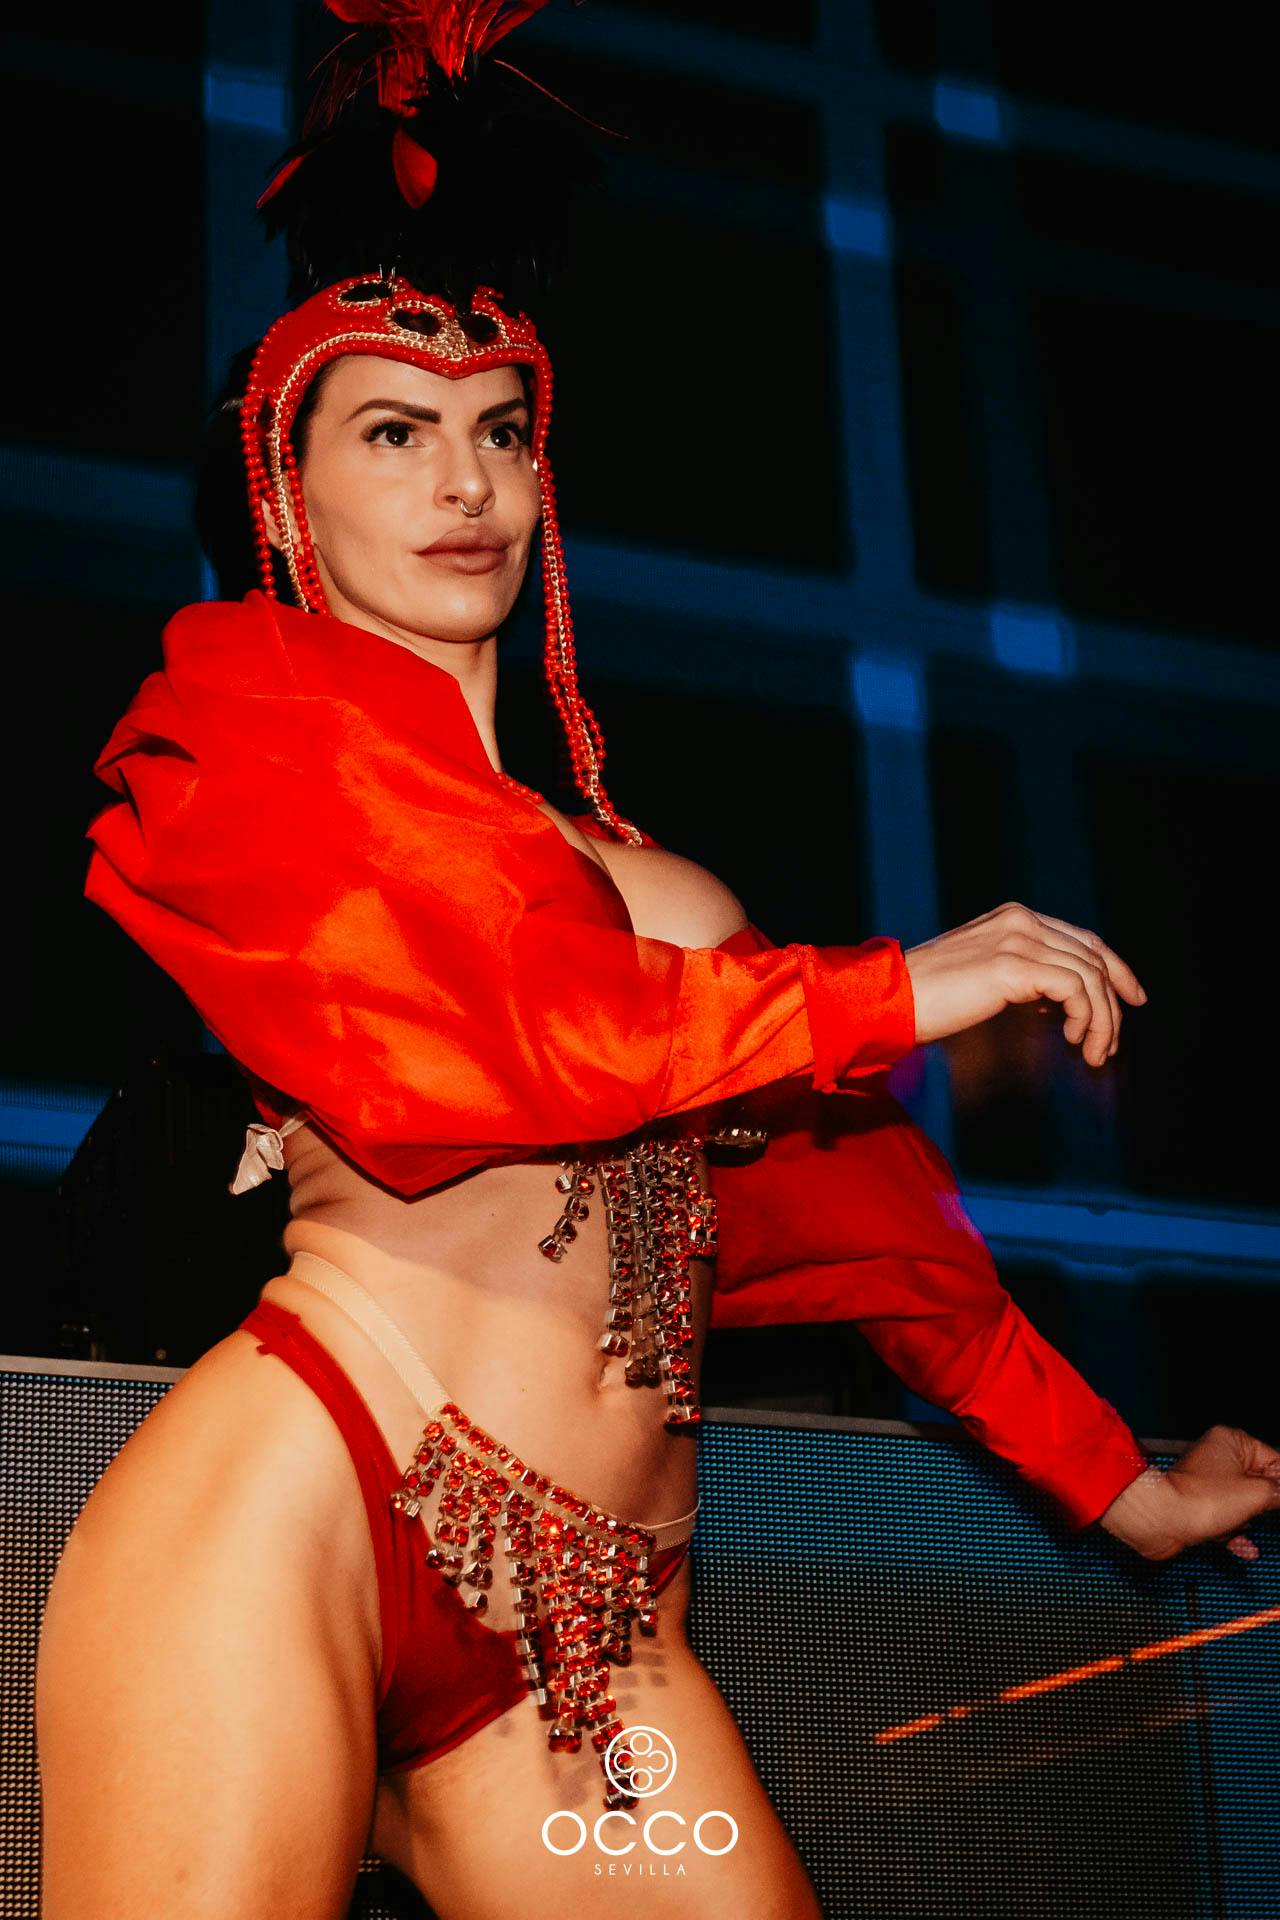 Occo bailarina roja plano americano fiesta samba